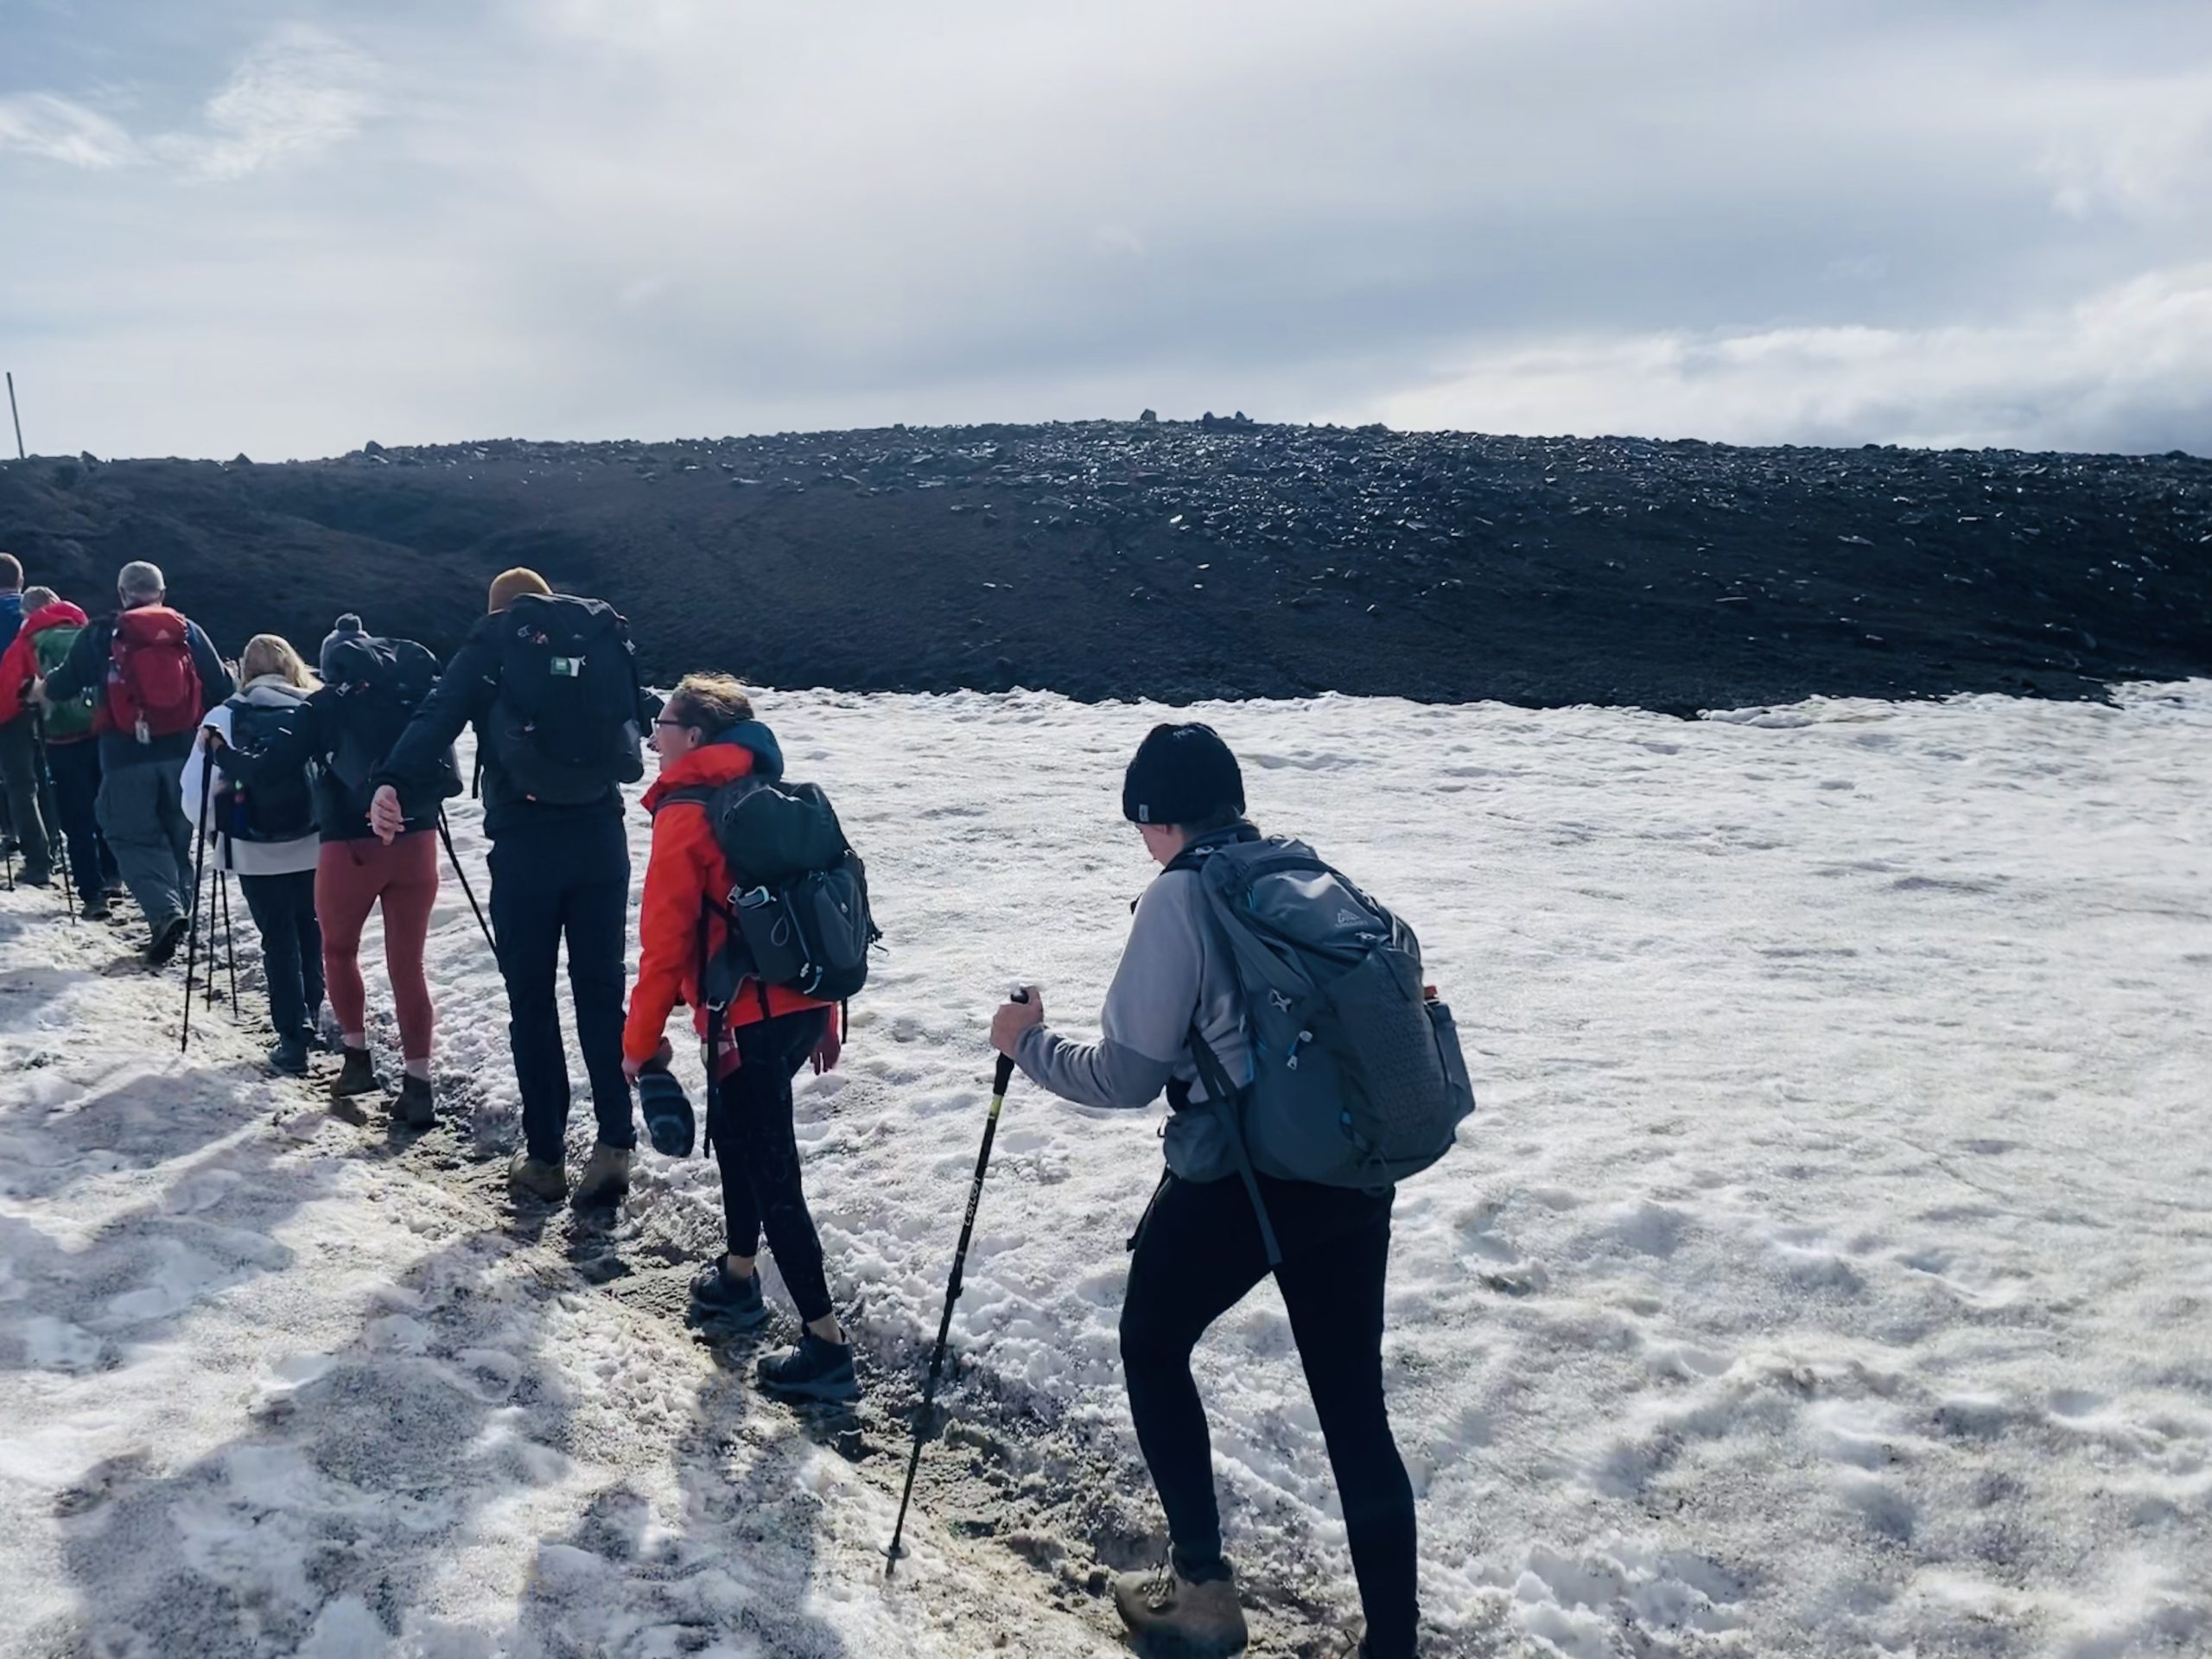 Laugavegur Groepsreis Anna Rottier - 1 aug - wandelen door de sneeuw